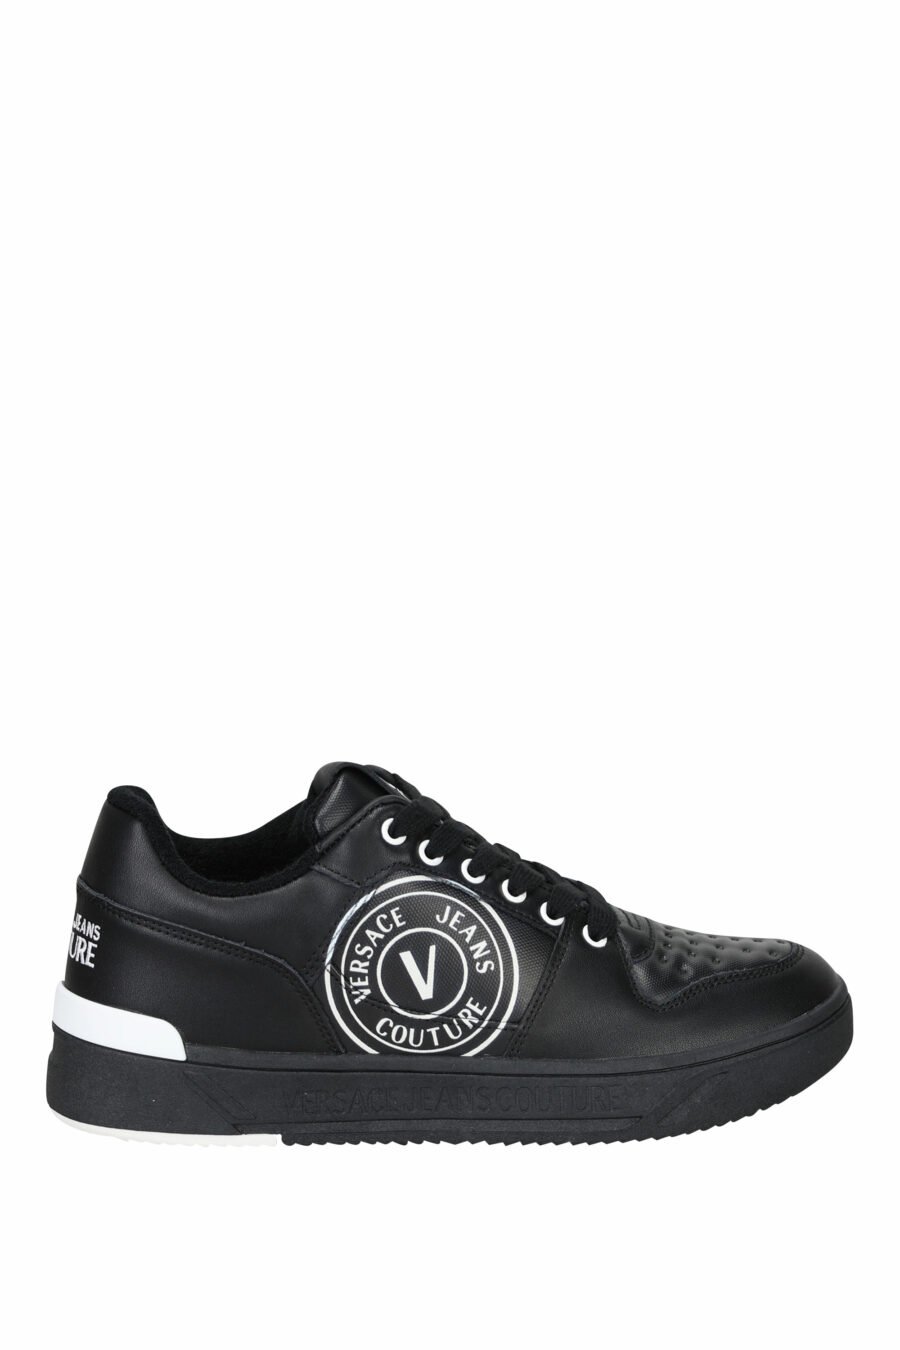 Zapatillas negras con blanco y logo circular - 8052019455366